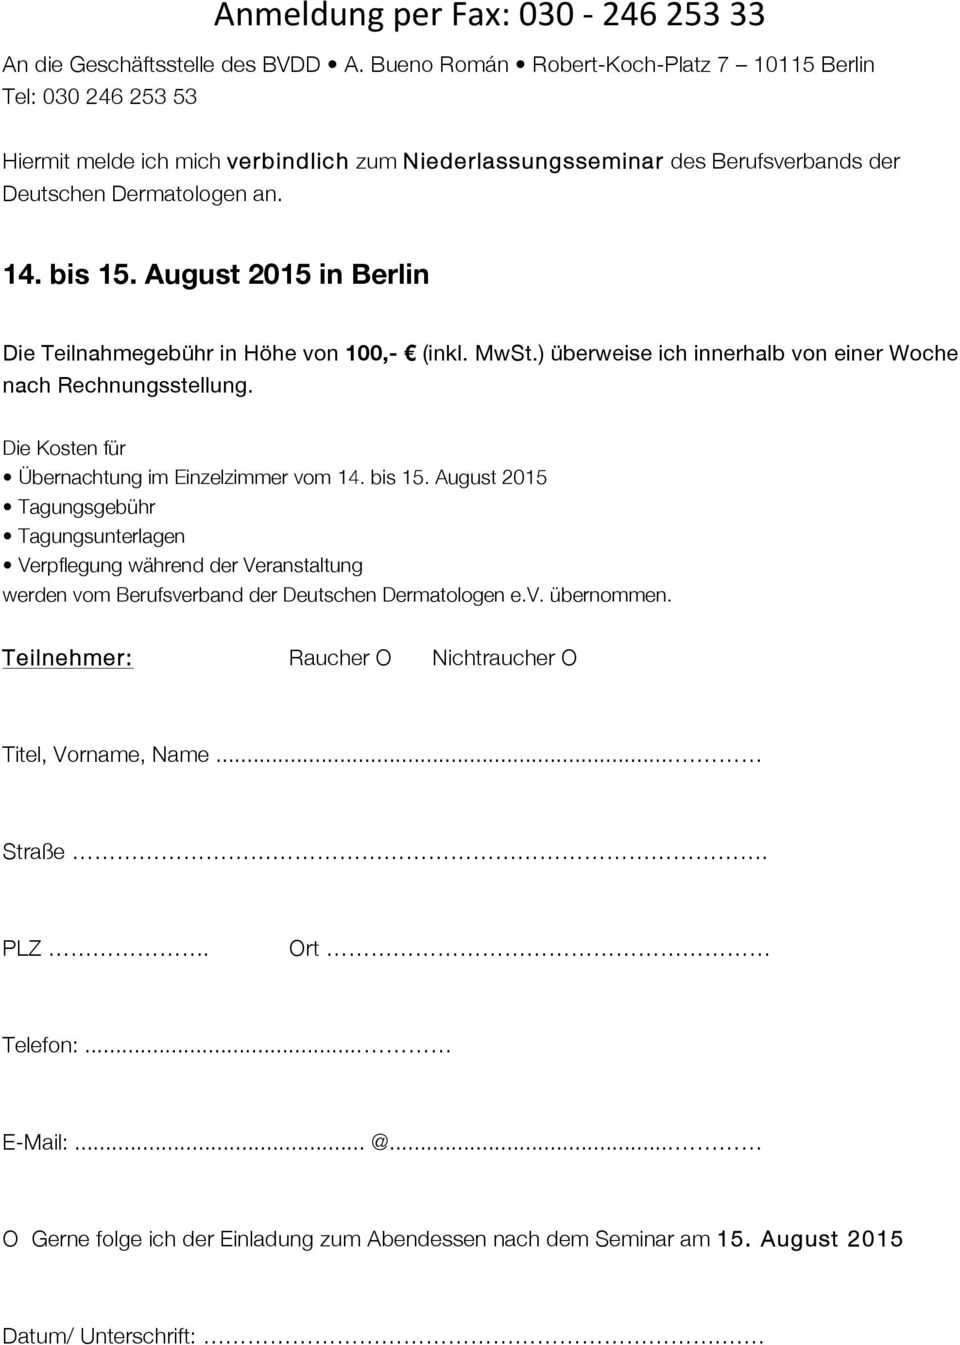 August 2015 in Berlin Die Teilnahmegebühr in Höhe von 100,- (inkl. MwSt.) überweise ich innerhalb von einer Woche nach Rechnungsstellung. Die Kosten für Übernachtung im Einzelzimmer vom 14. bis 15.